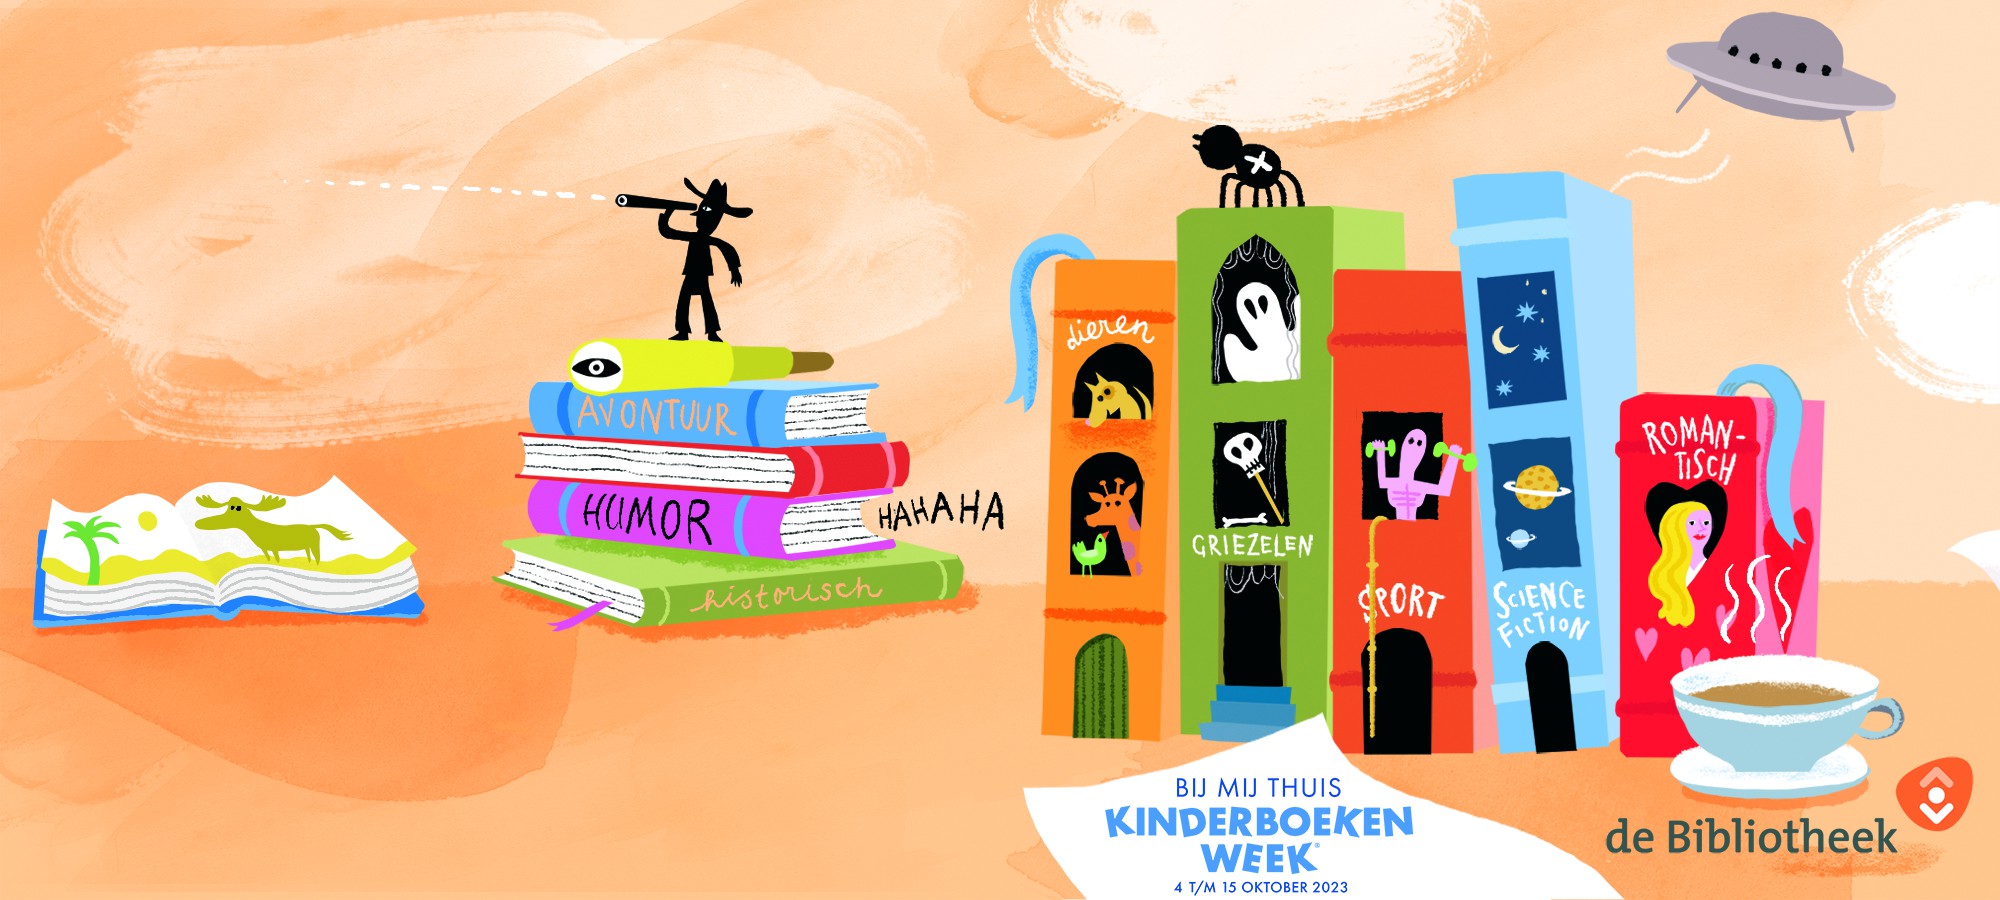 Illustratie bij Kinderboekenweekprogramma 2023